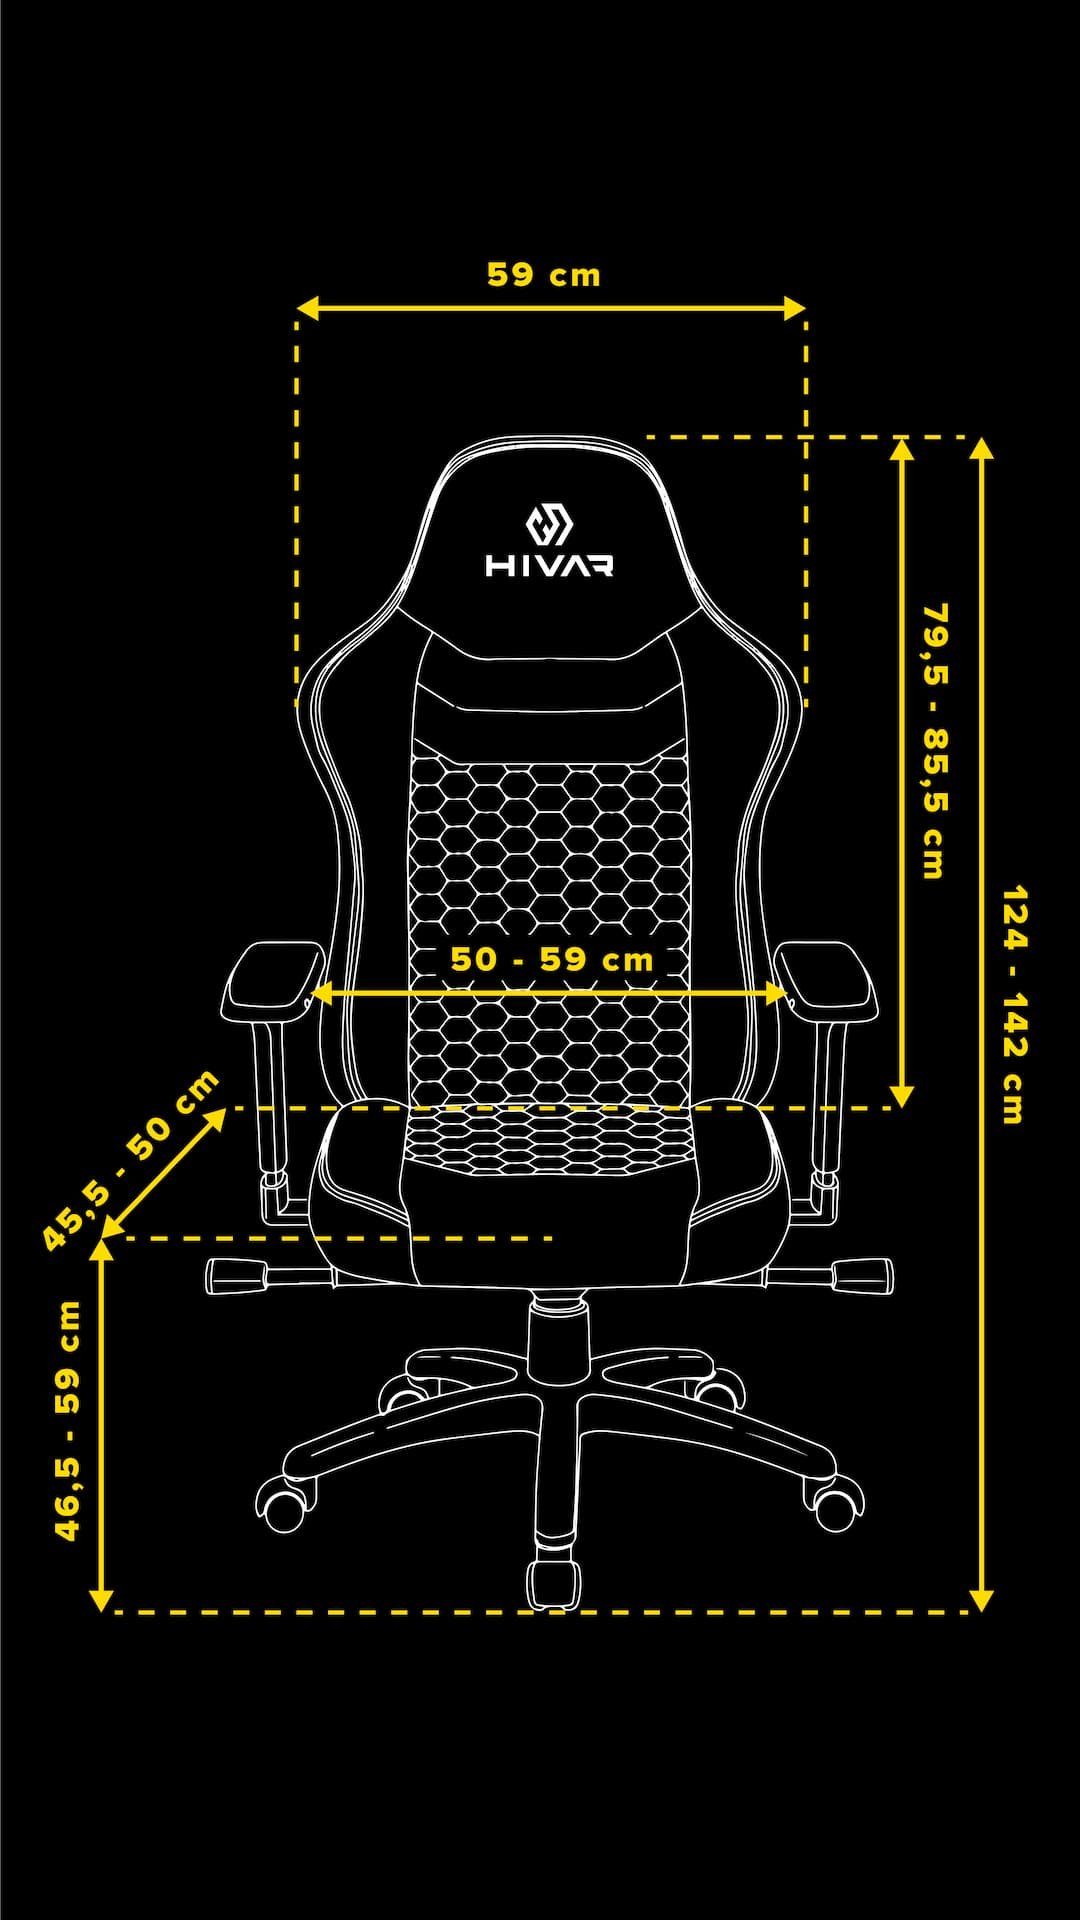 HIVAR Gaming-Stuhl ORBICAL 130 Wippwiderstand, Fußkreuz: Coal TÜV Belastbarkeit Sitztiefenverstellung, Rückenlehne, geprüft, Lordosenstütze, kg 4D AURORA, Armlehnen, Synchronmechanik, höhenverstellbare